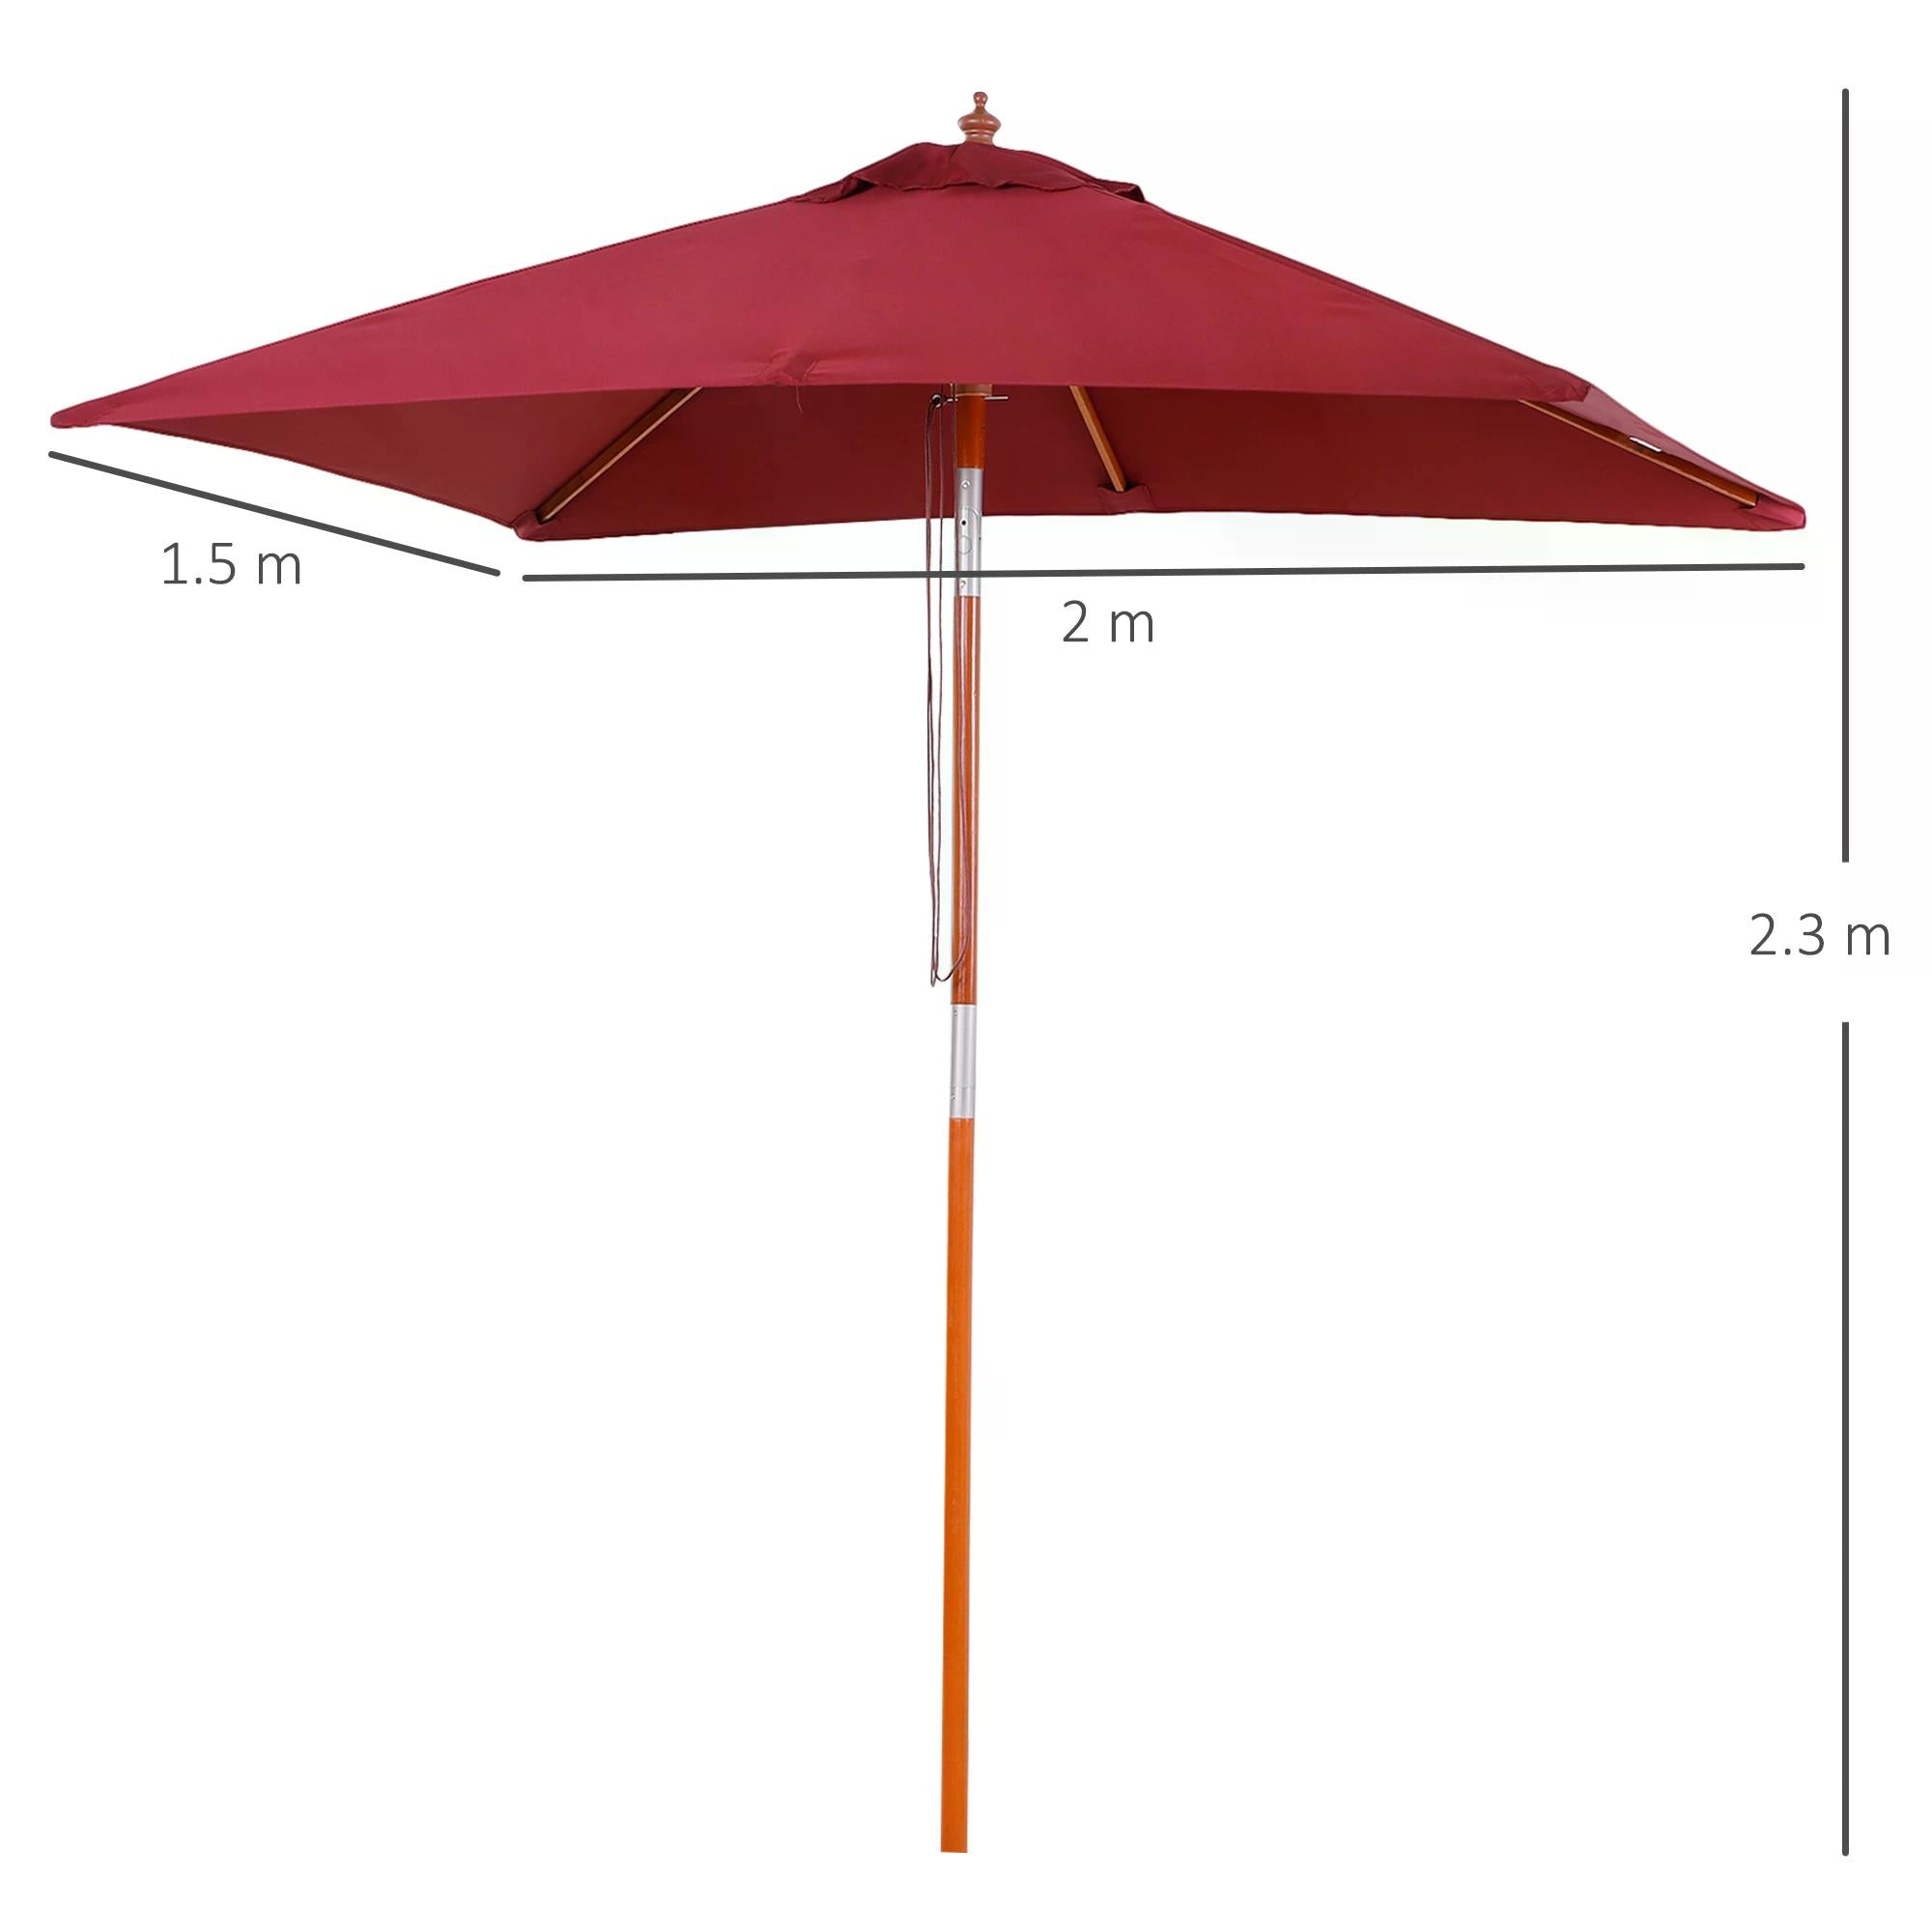 2 x 1.5m Patio Garden Parasol Sun Umbrella Sunshade Canopy Outdoor Backyard Furniture Fir Wooden Pole 6 Ribs Tilt Mechanism - Wine Red-2